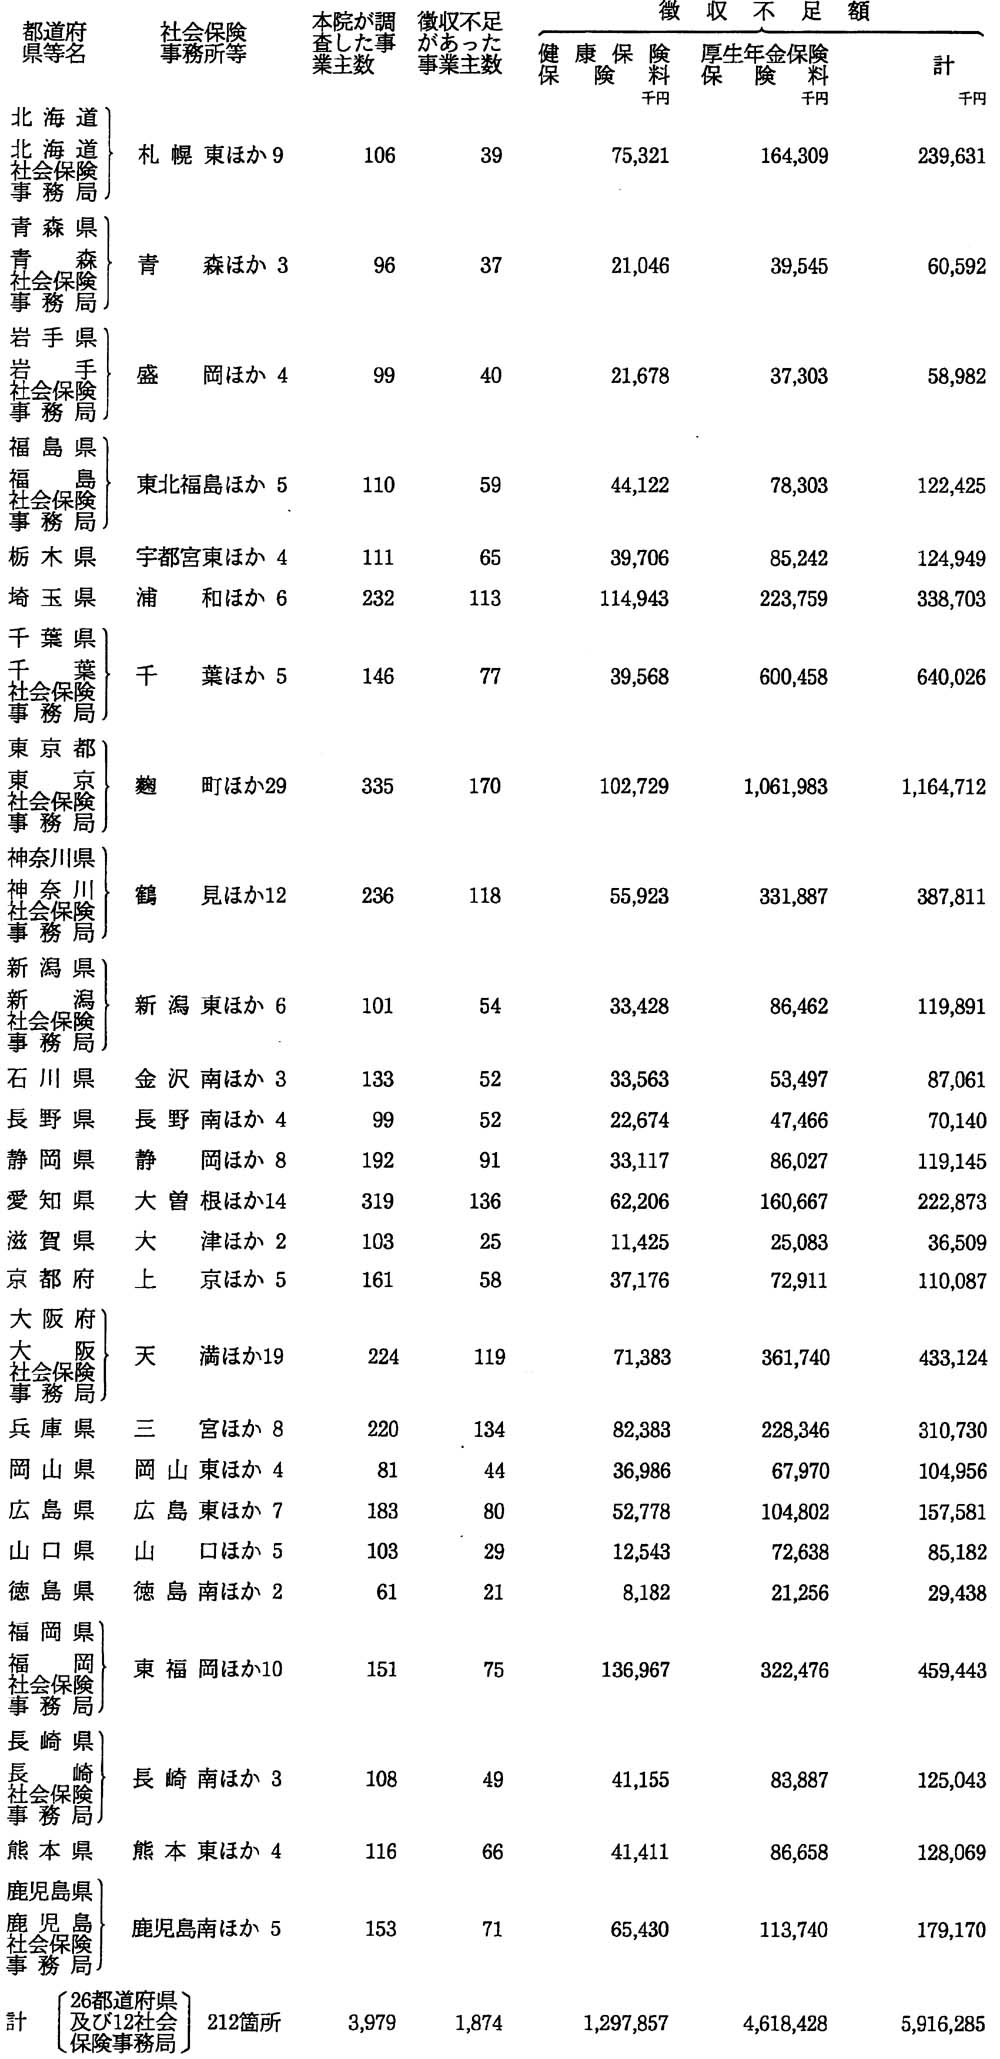 これらの徴収不足額を都道府県等ごとに示すと次のとおりである。